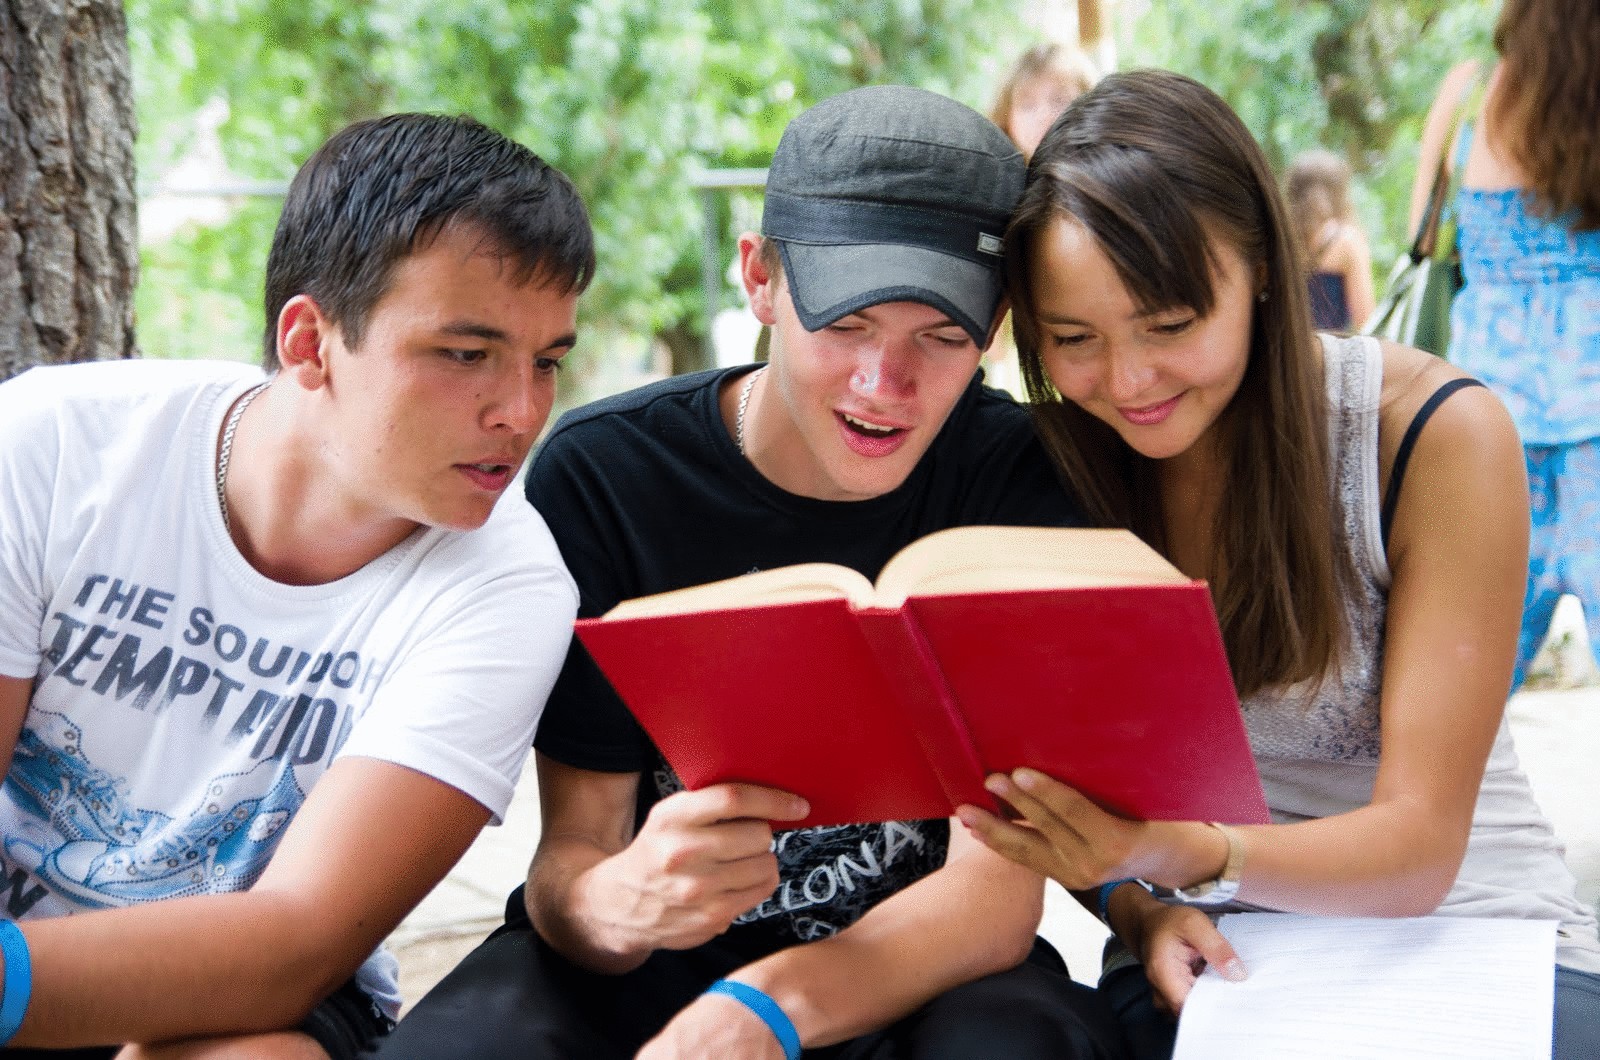 Читать про студентов мажоров и простую. Современная молодежь. Подросток с книжкой. Молодежь и чтение. Молодежь и книга.